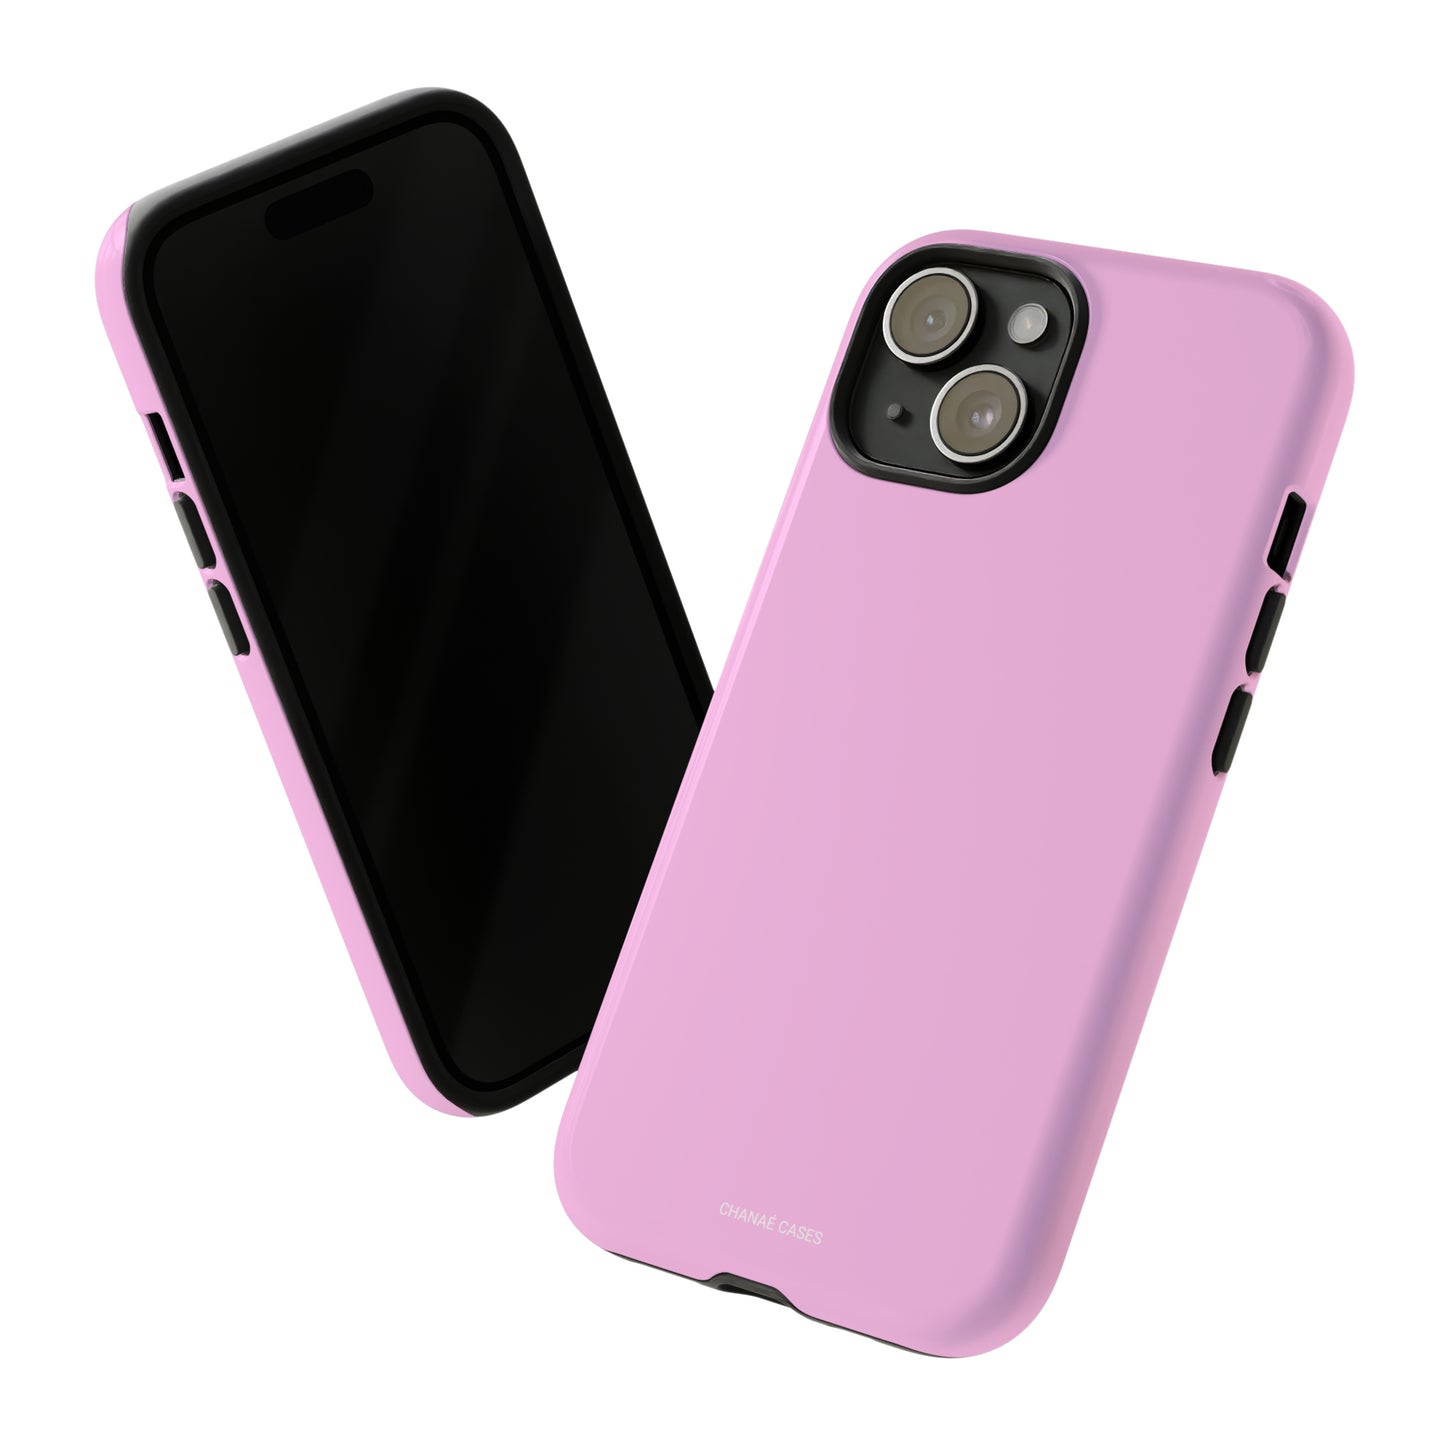 Make Me Blush iPhone "Tough" Case (Pink)